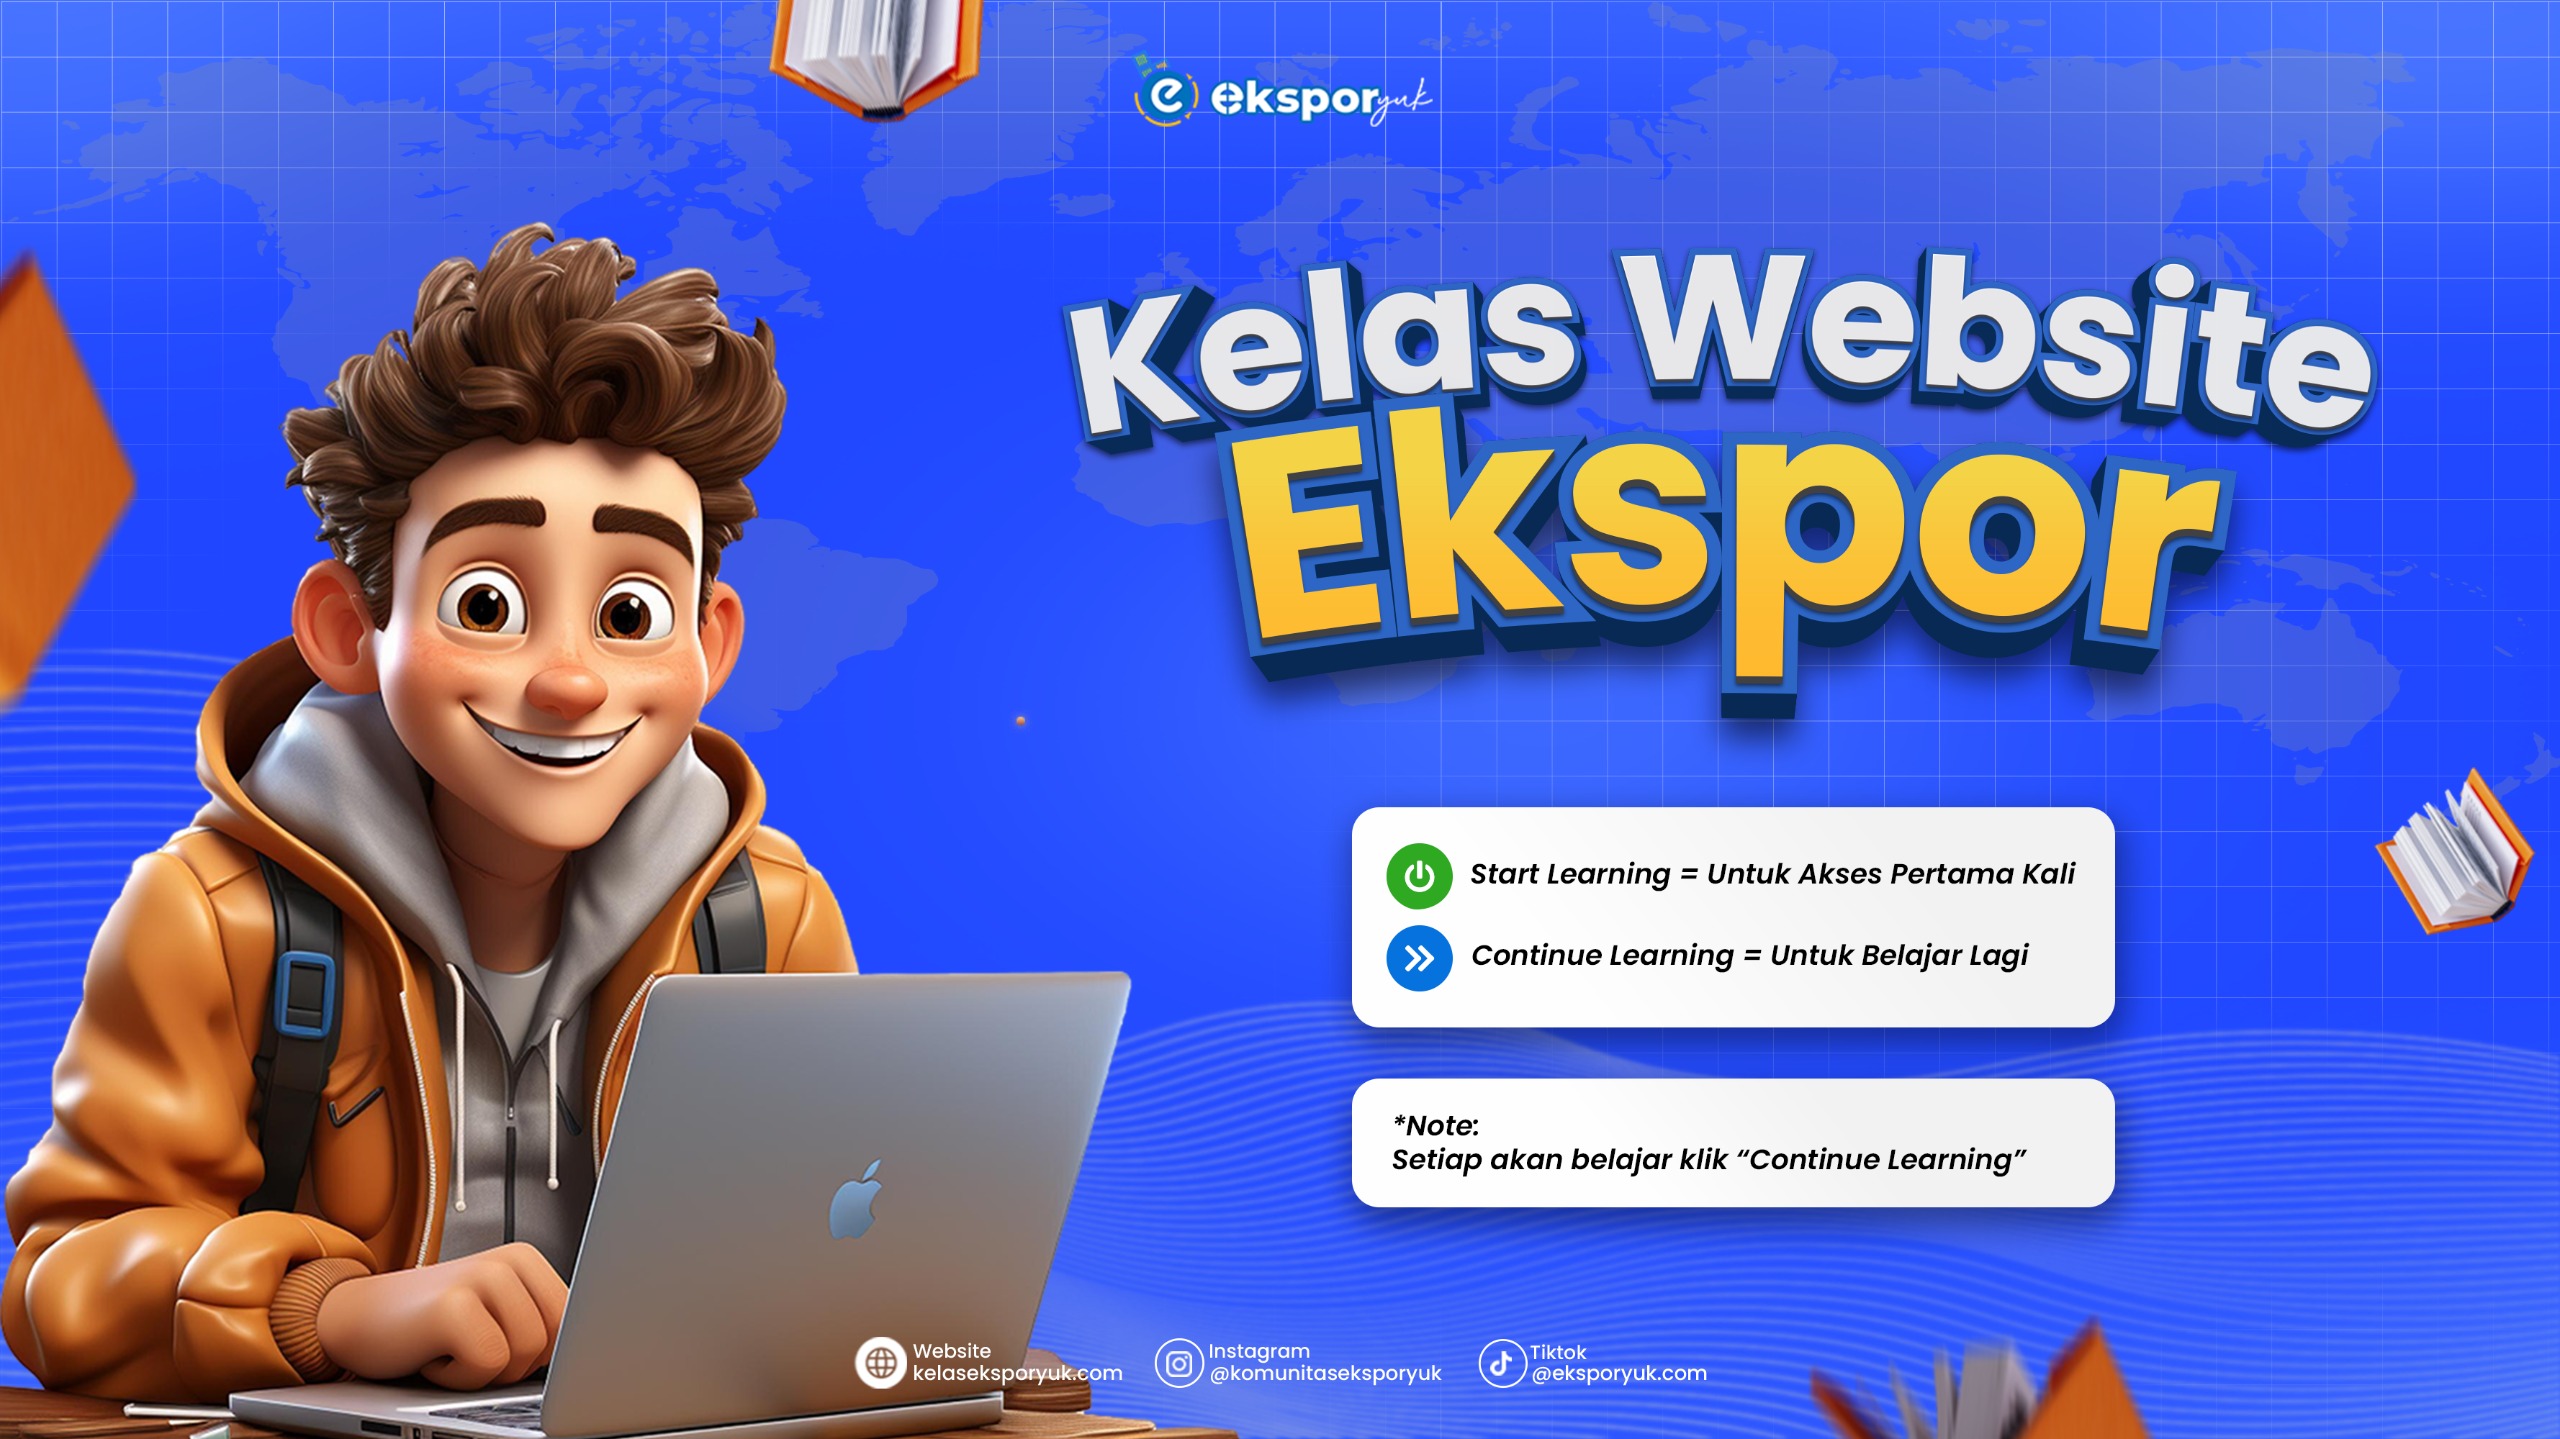 KELAS WEBSITE EKSPOR